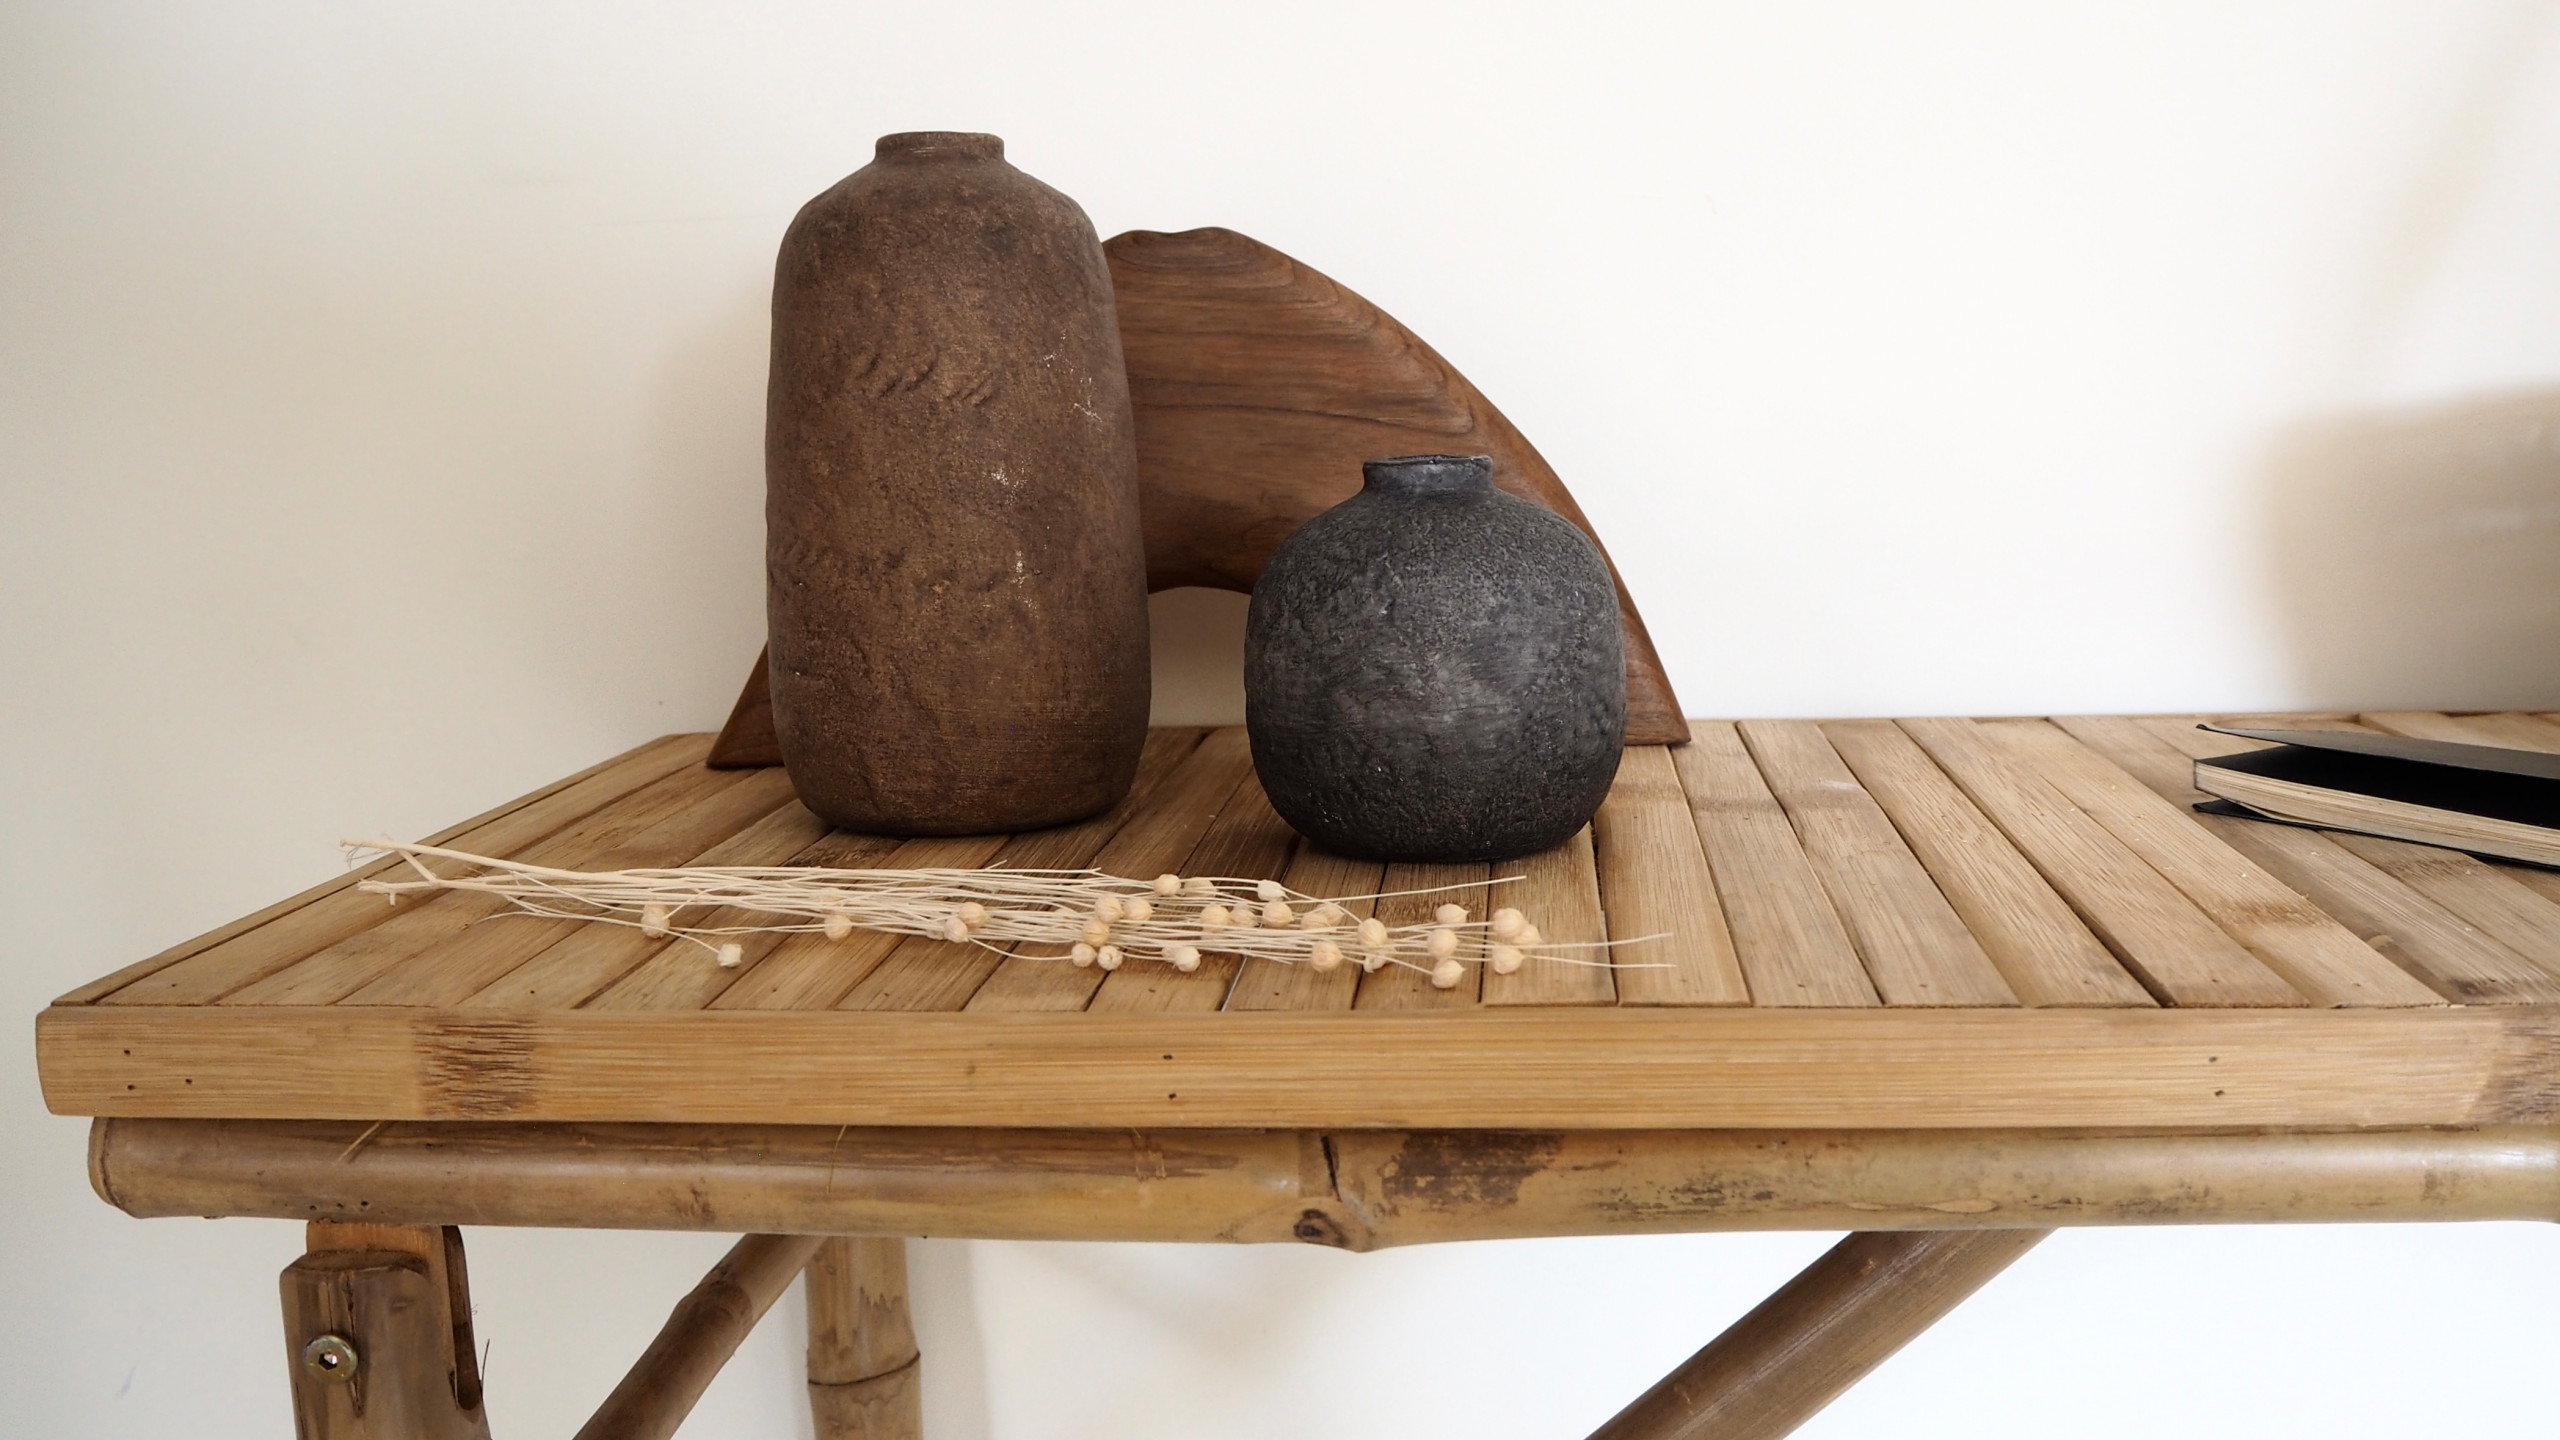 Détail des obejts Wabi-sabi sélectionnés pour une console en bambou sculpté à la main.